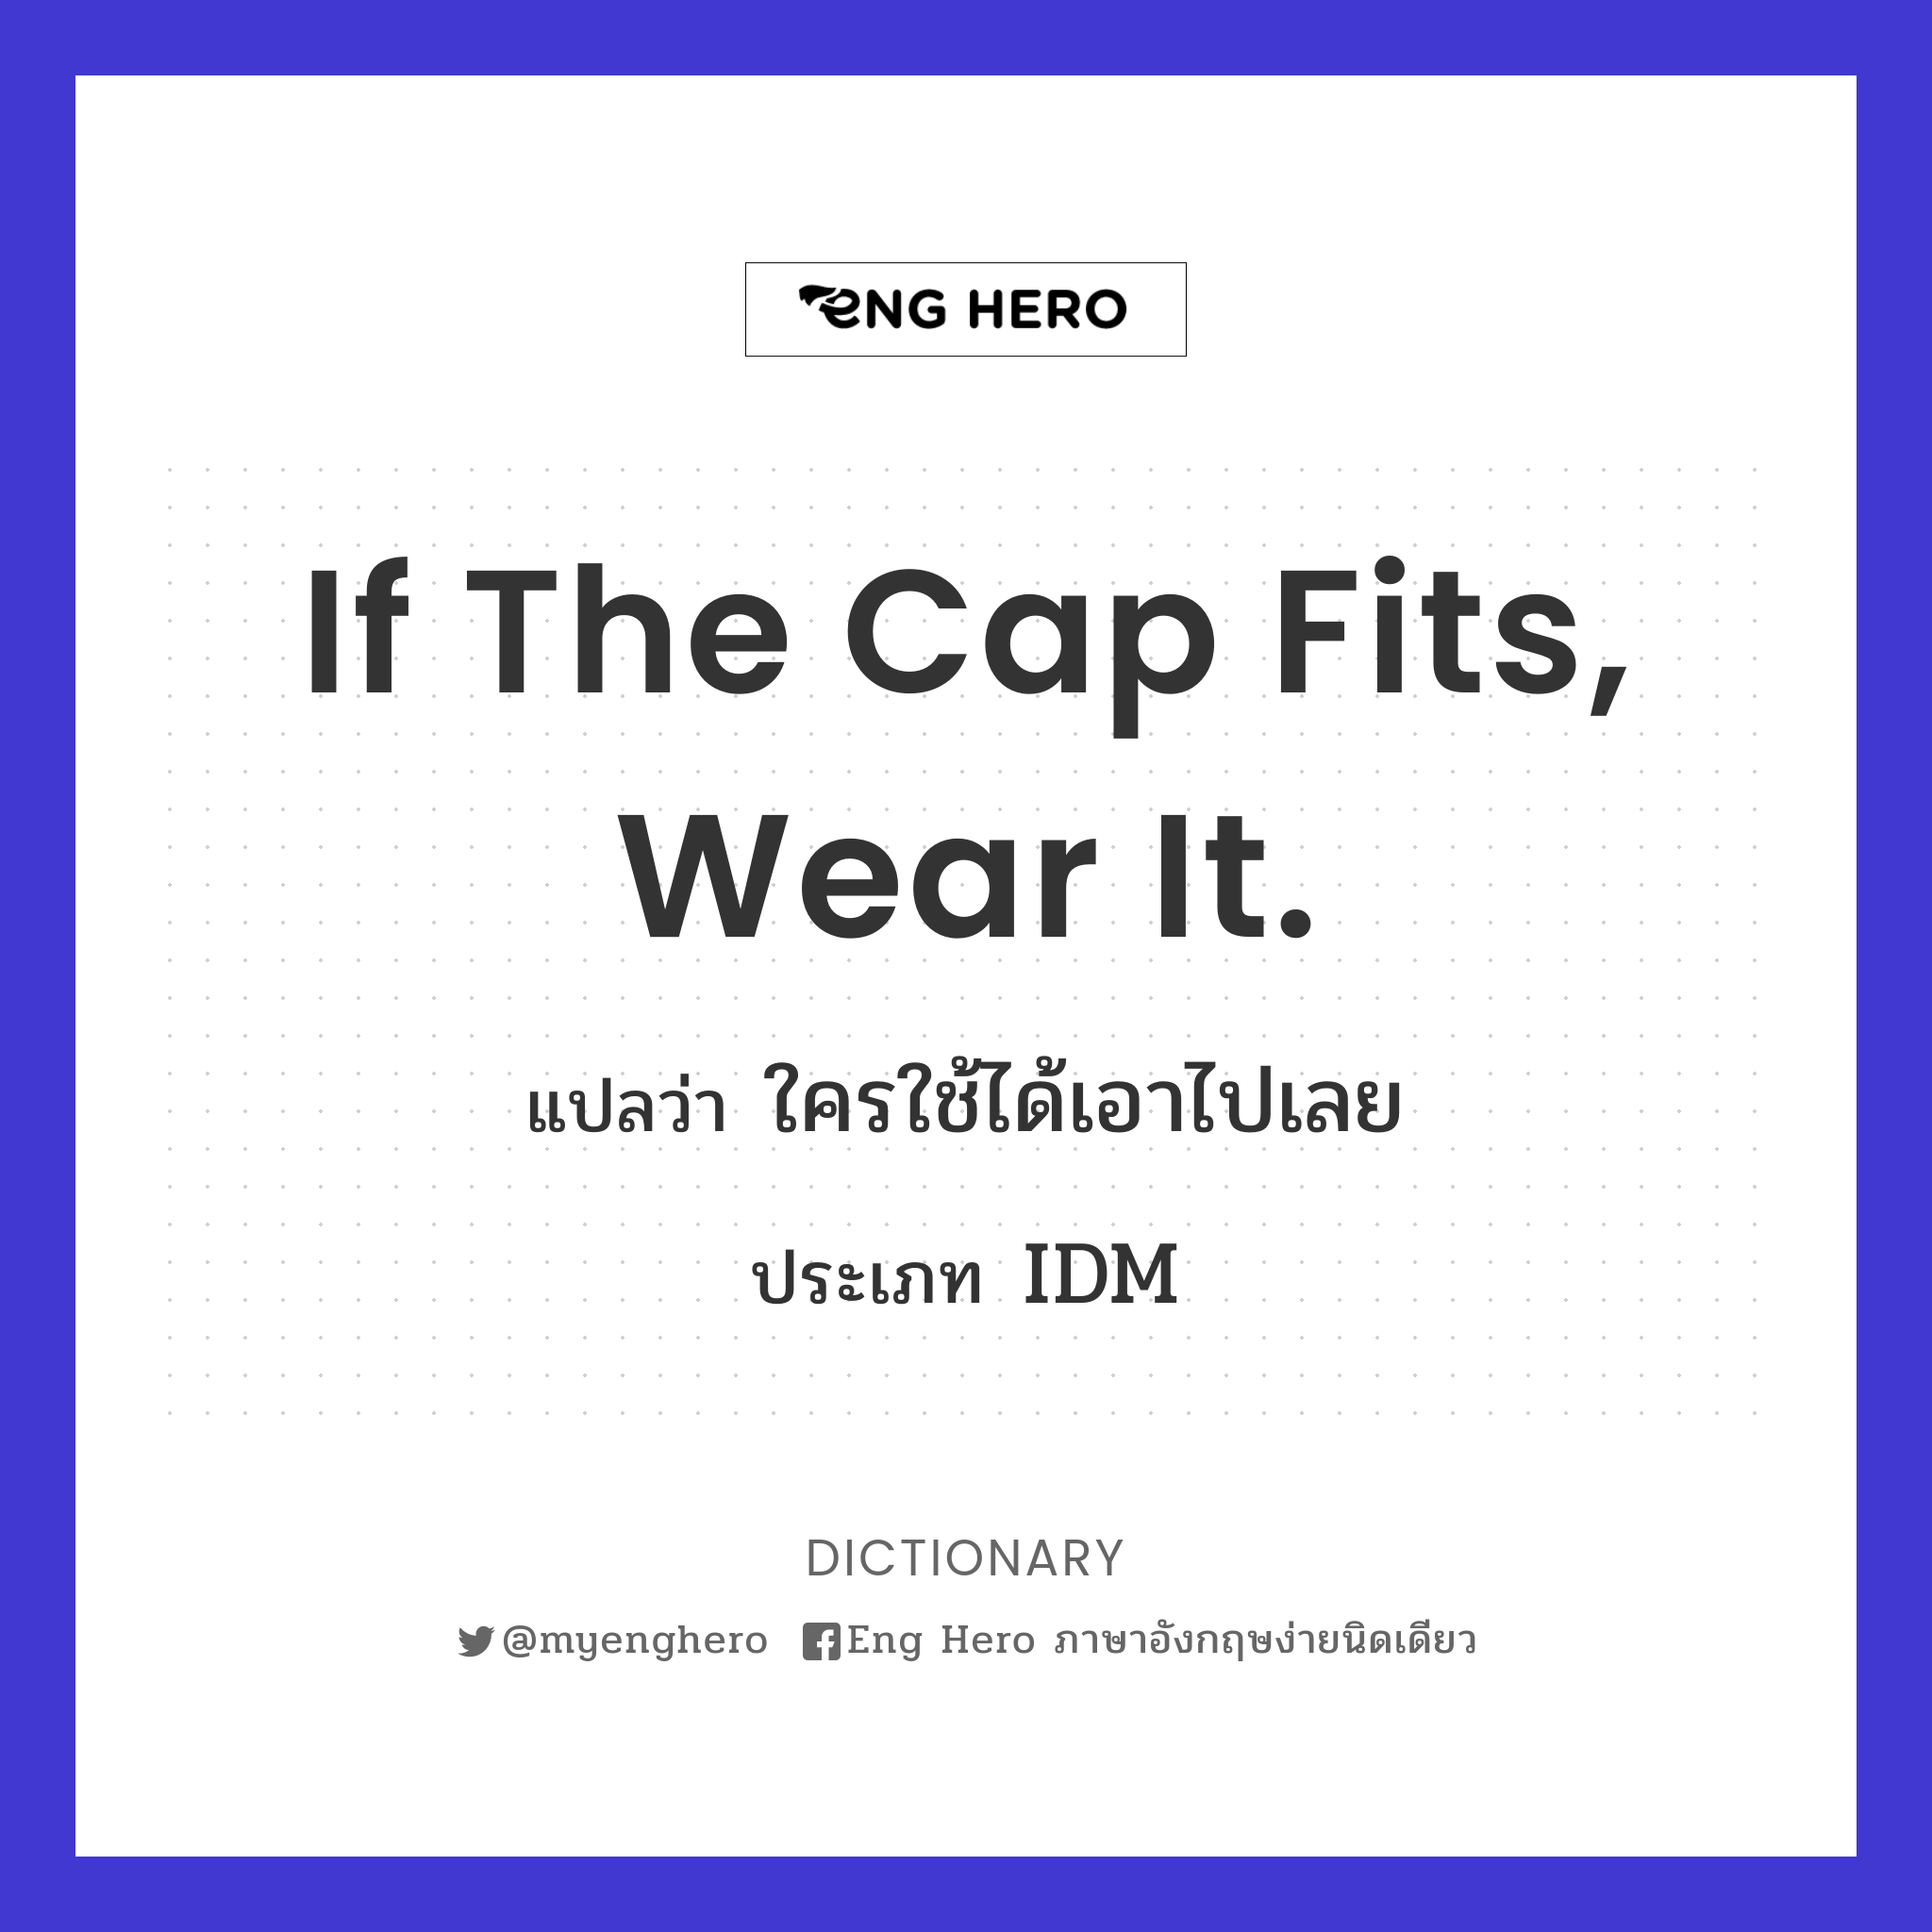 If the cap fits, wear it.